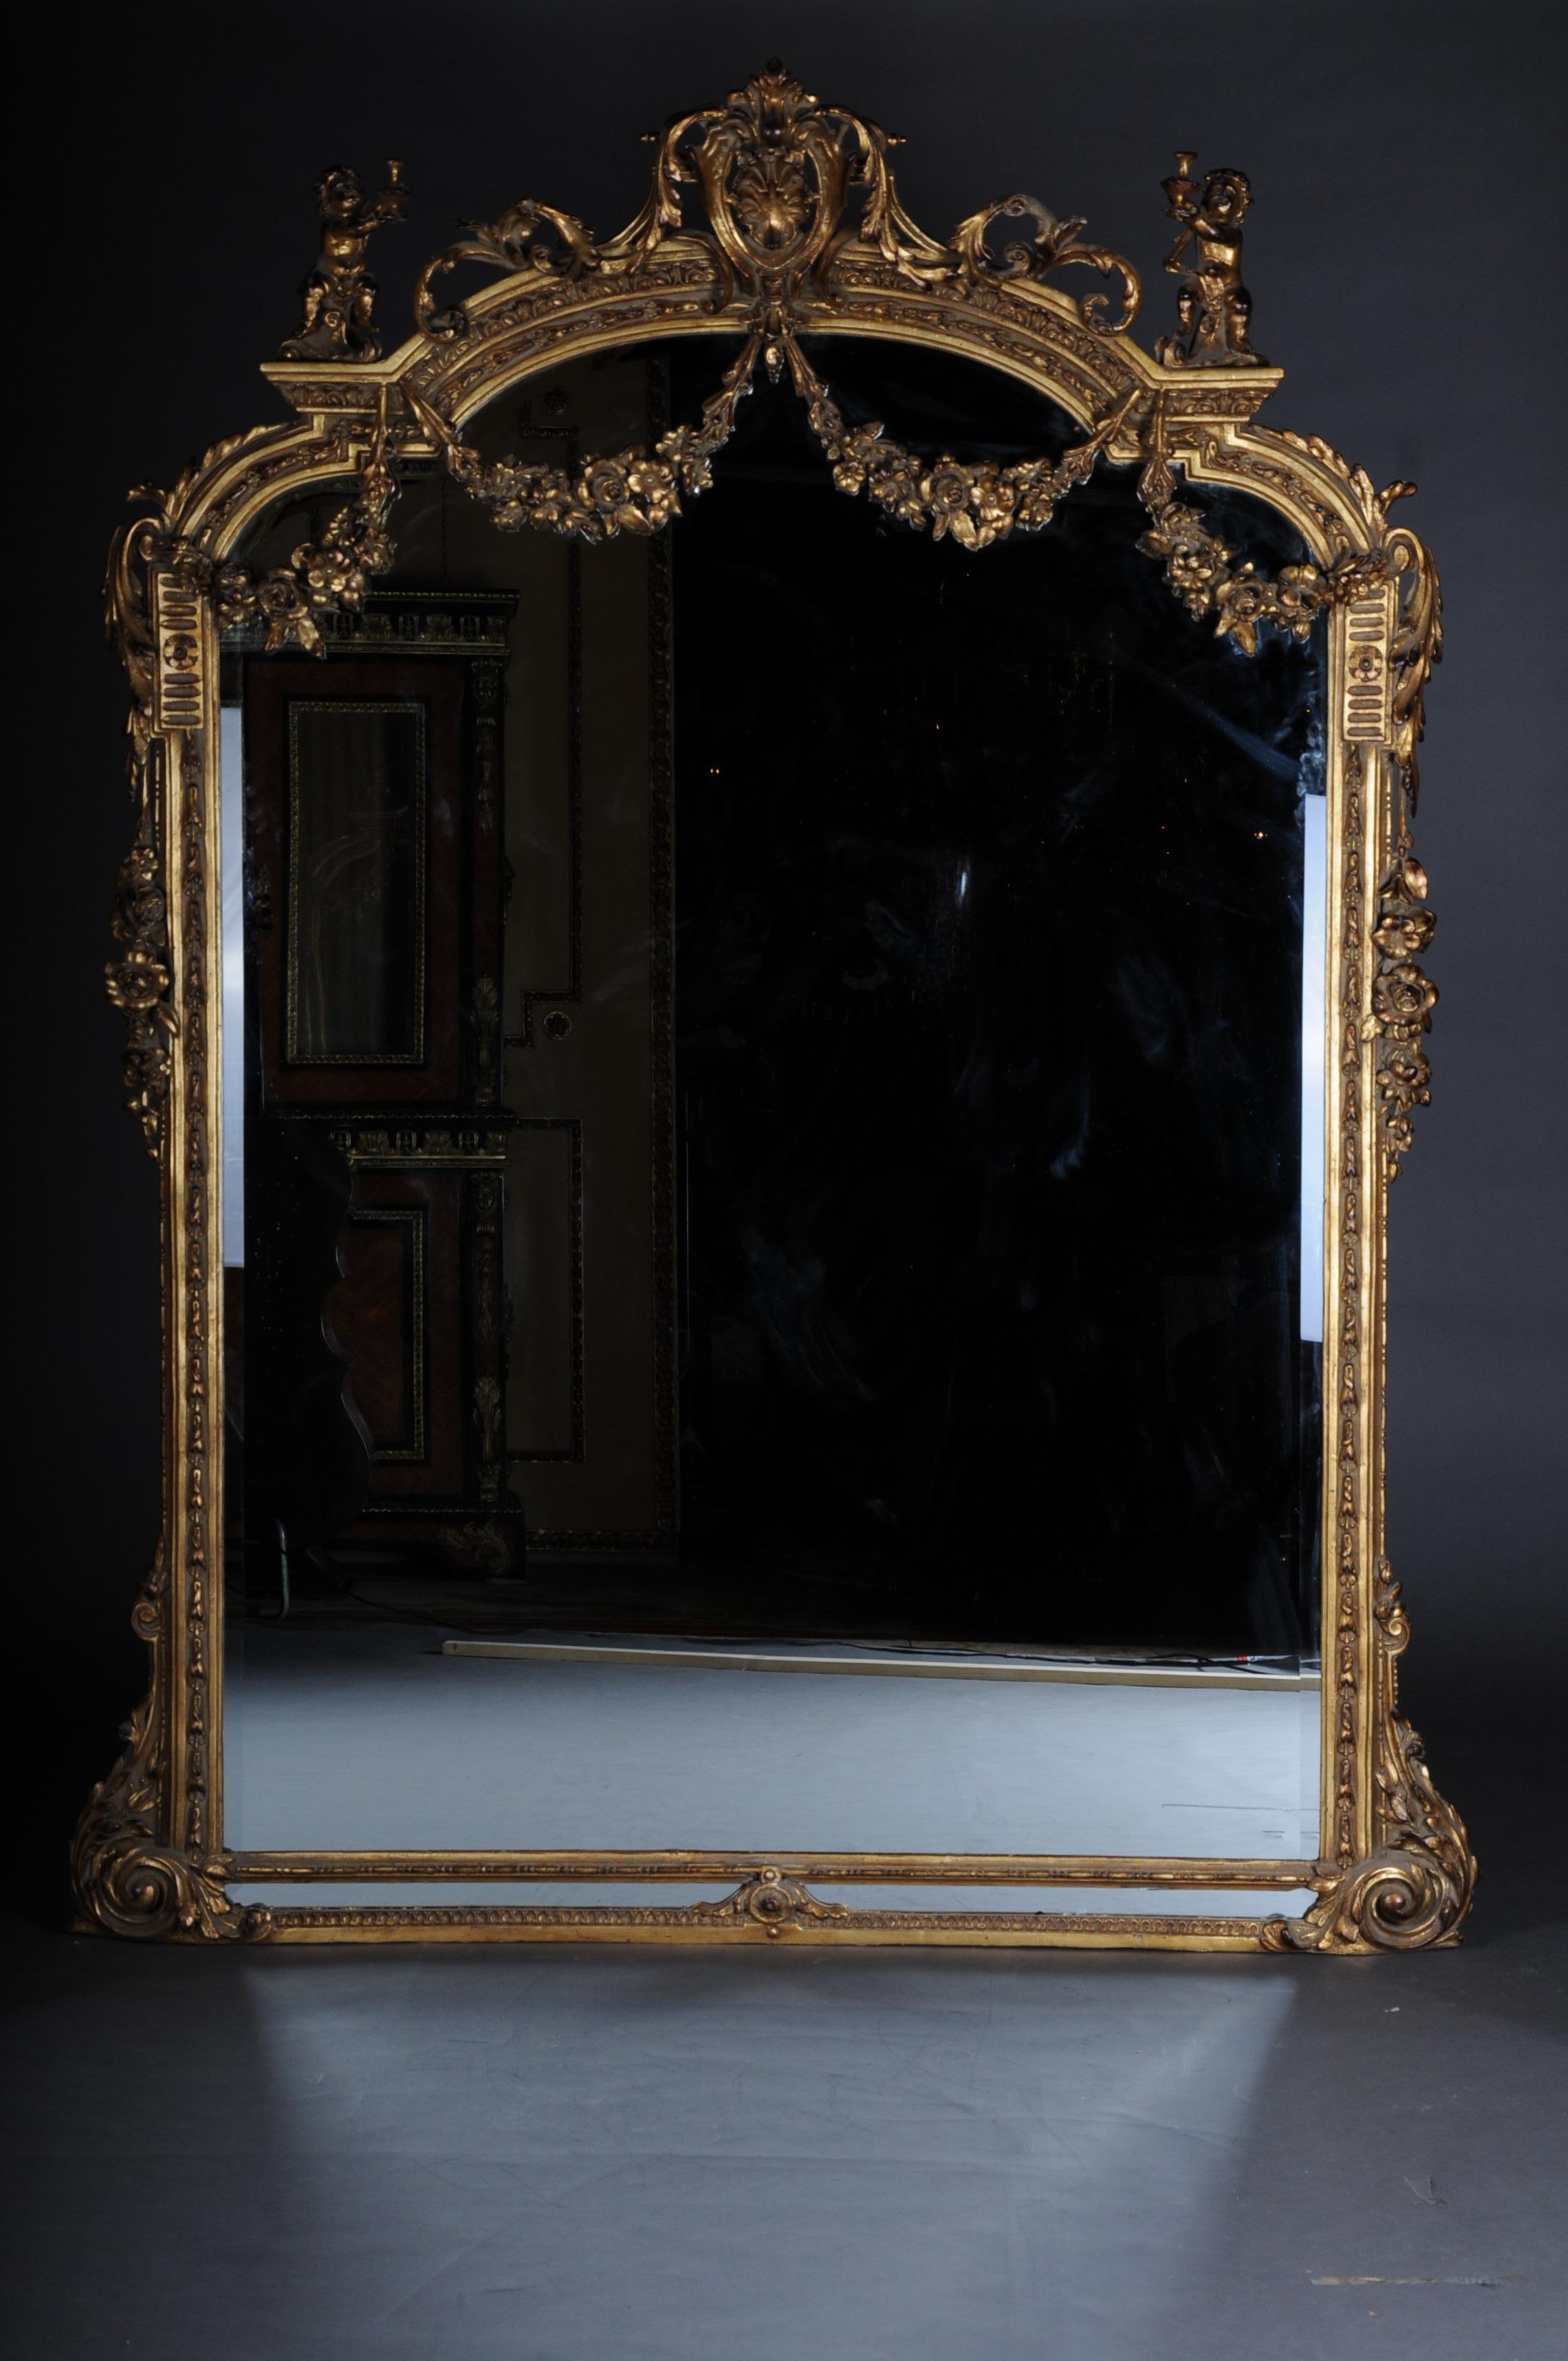 Grand miroir sur pied de style Louis XVI en bois de hêtre massif

Bois massif et en partie avec des éléments en stuc. Riche couronnement rocaille ajouré en forme de pignon. Avec des guirlandes de fleurs sculptées à la main, flanquées de